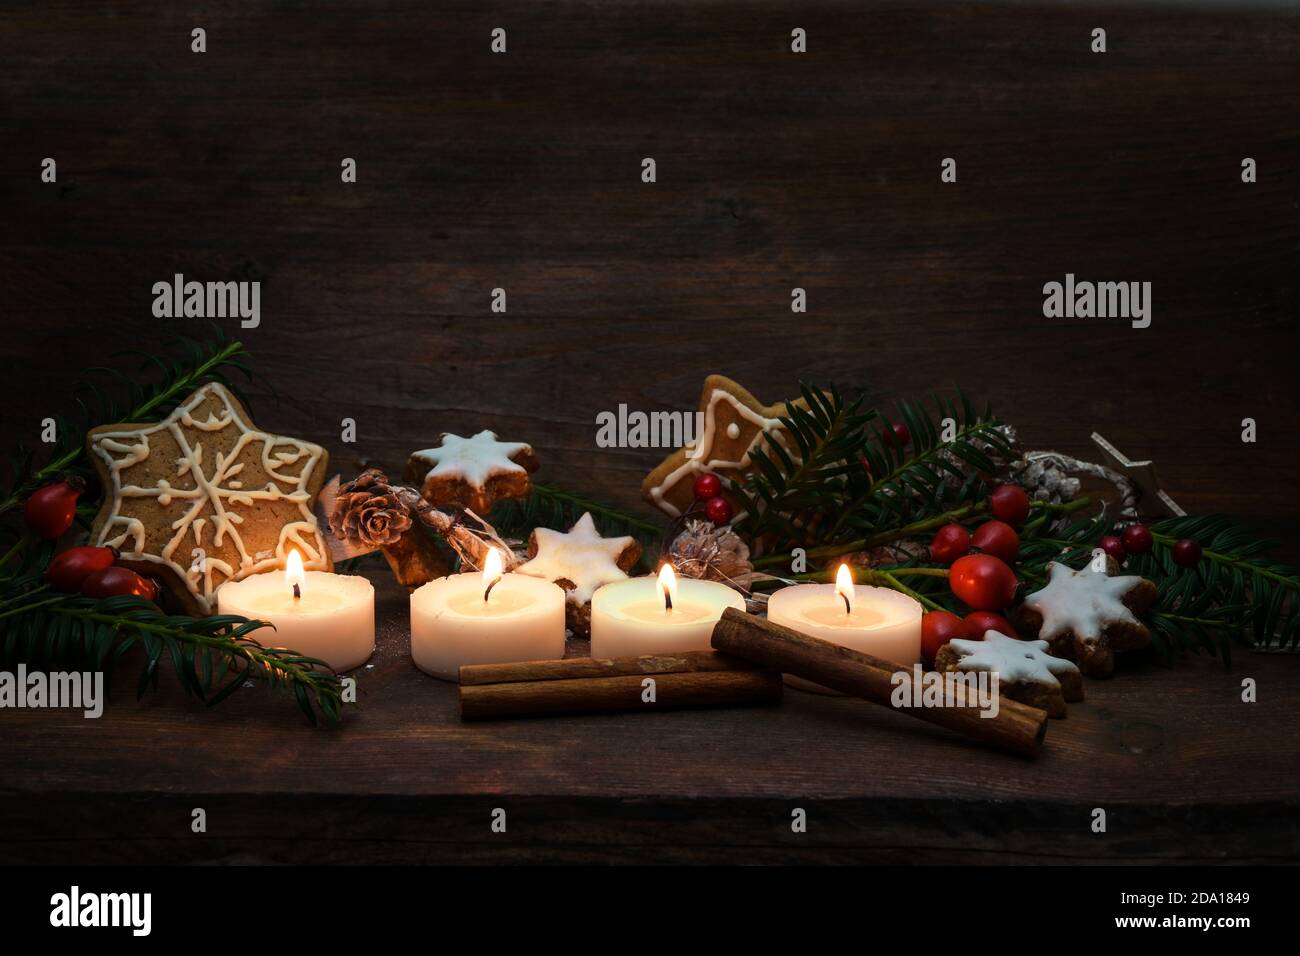 Quatre petites bougies allumées pour l'Avent et la décoration de Noël comme des biscuits de pain d'épice, des branches et des hanches roses sur un fond de bois rustique foncé, genero Banque D'Images